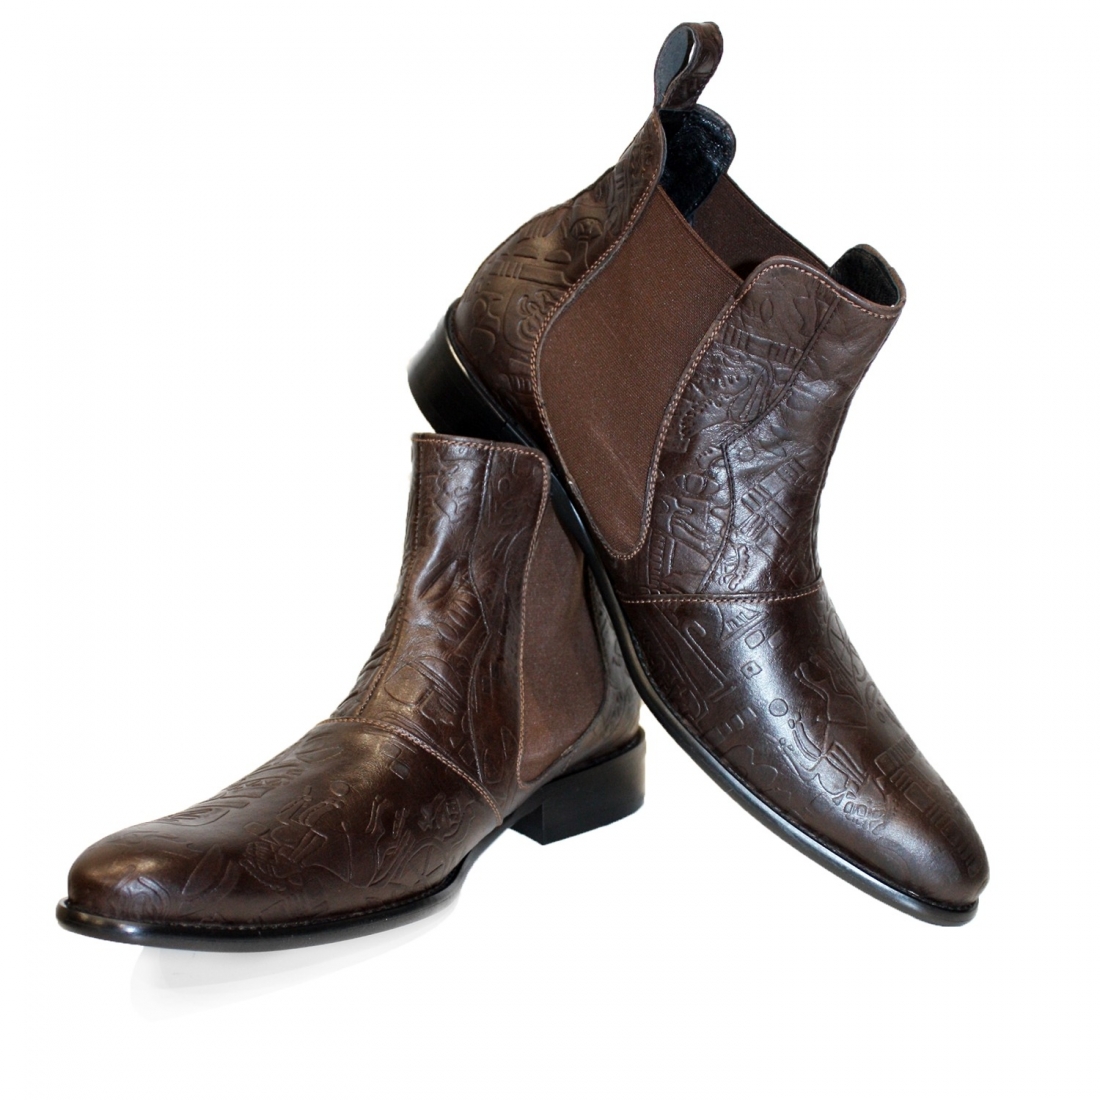 Modello Sevenerro - Chelsea Botas - Handmade Colorful Italian Leather Shoes